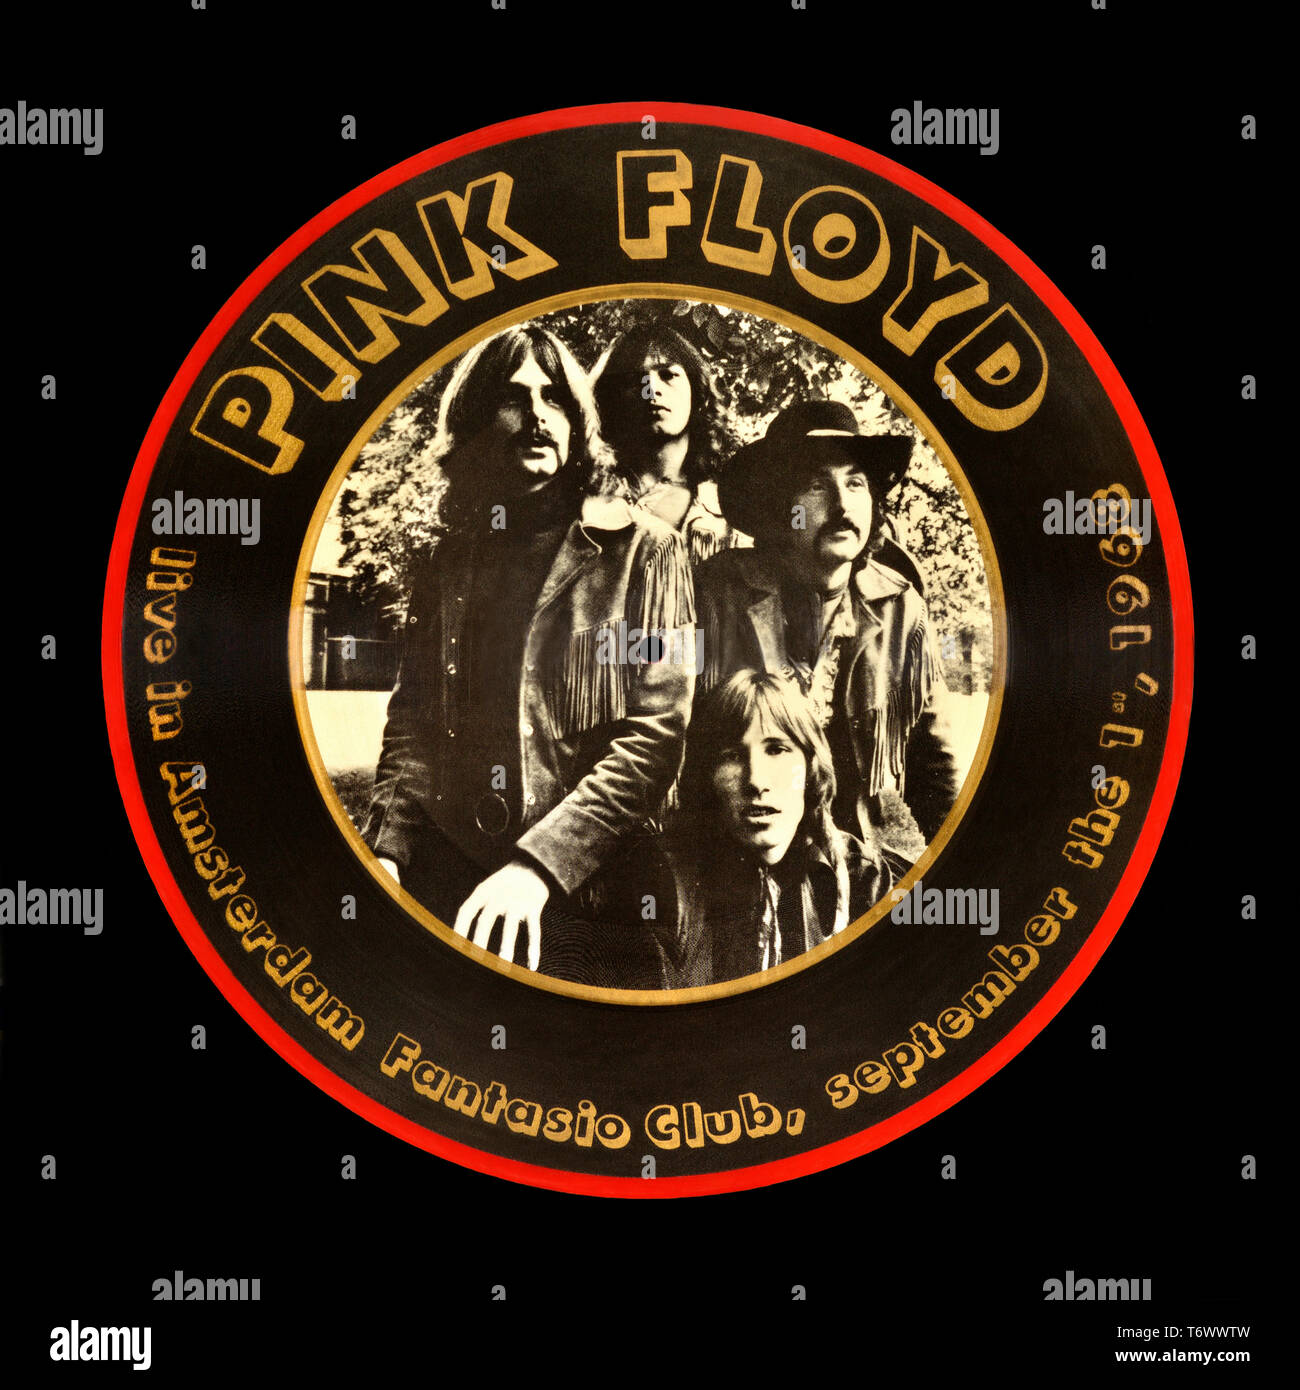 Pink Floyd - original vinyl album cover - Live In Amsterdam Fantasio Club - 1987 Stock Photo